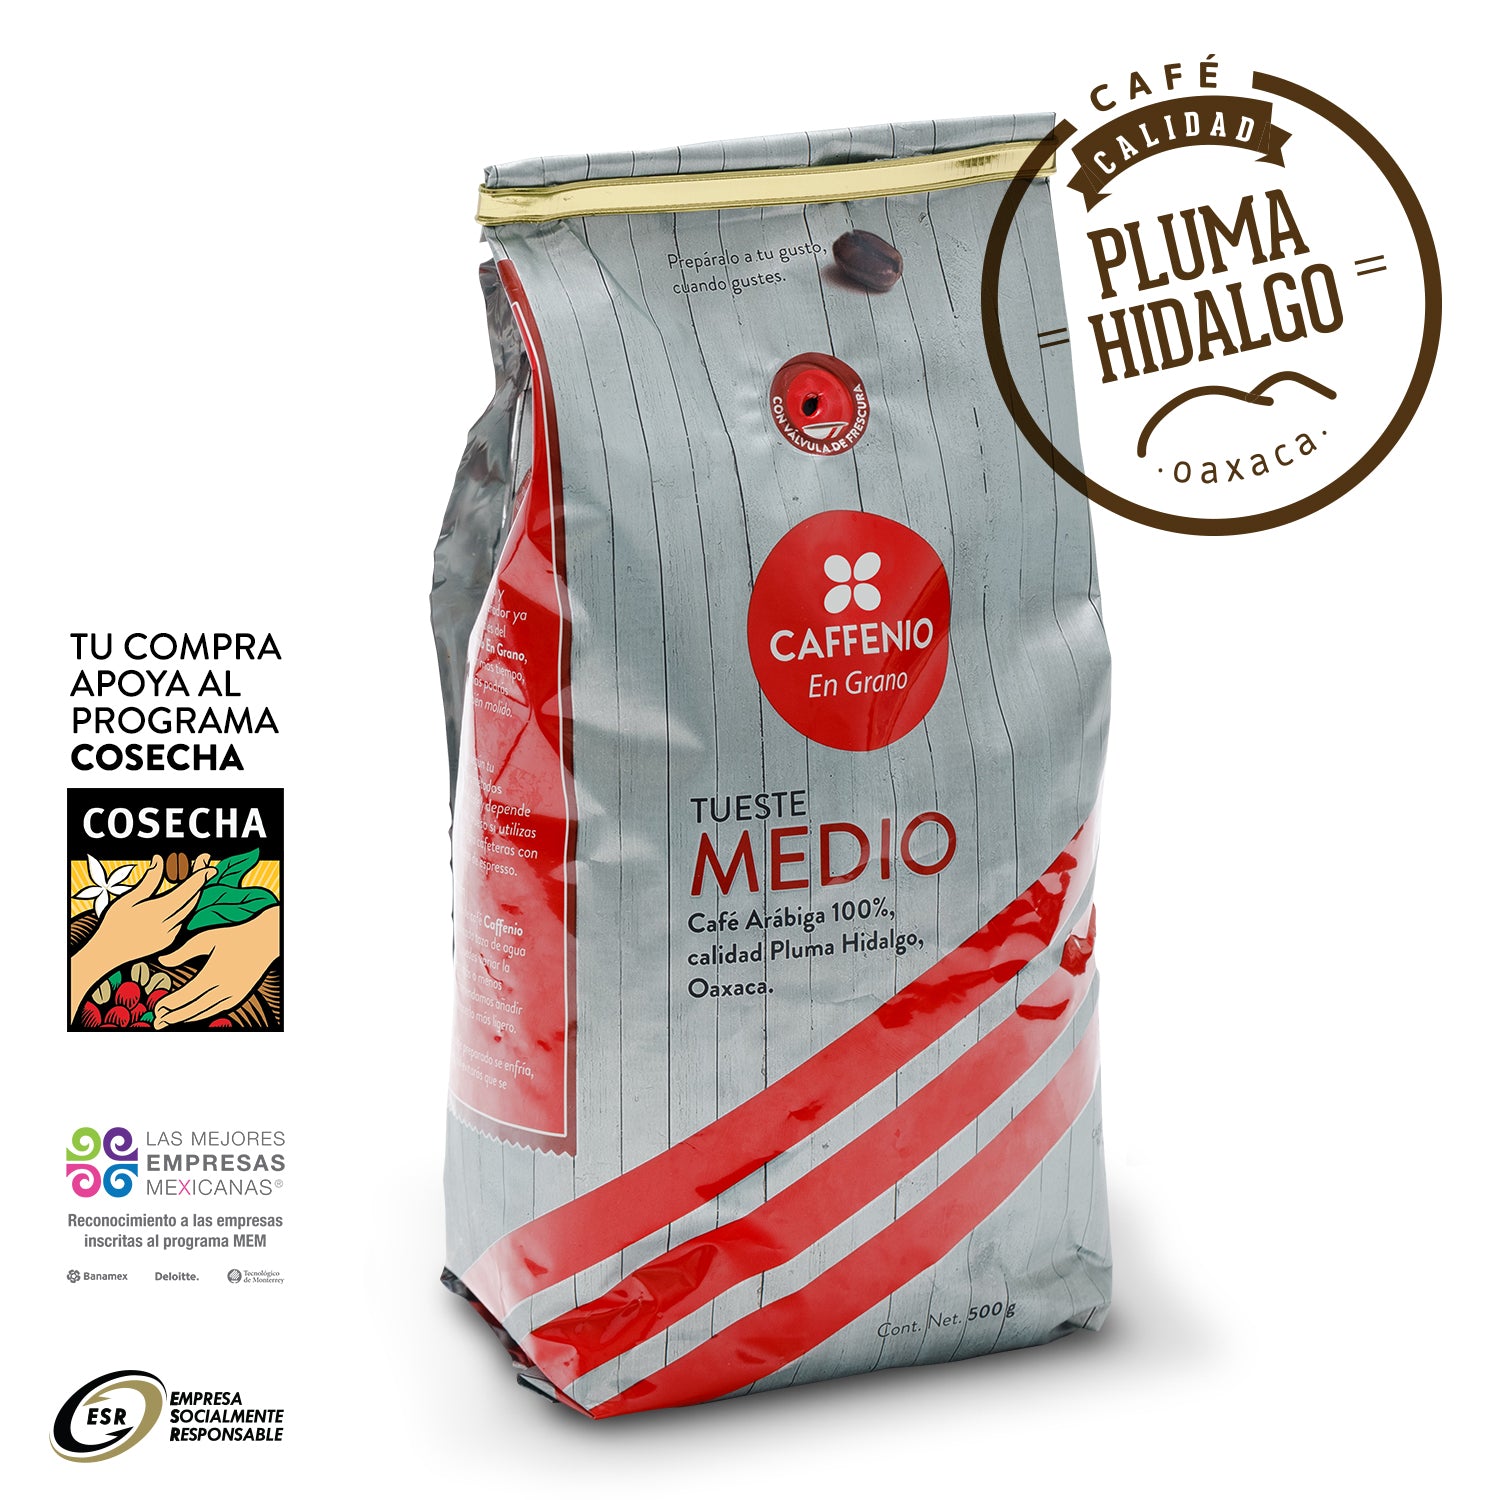 Combo Premium Cafetera con Molino HB – CAFFENIO